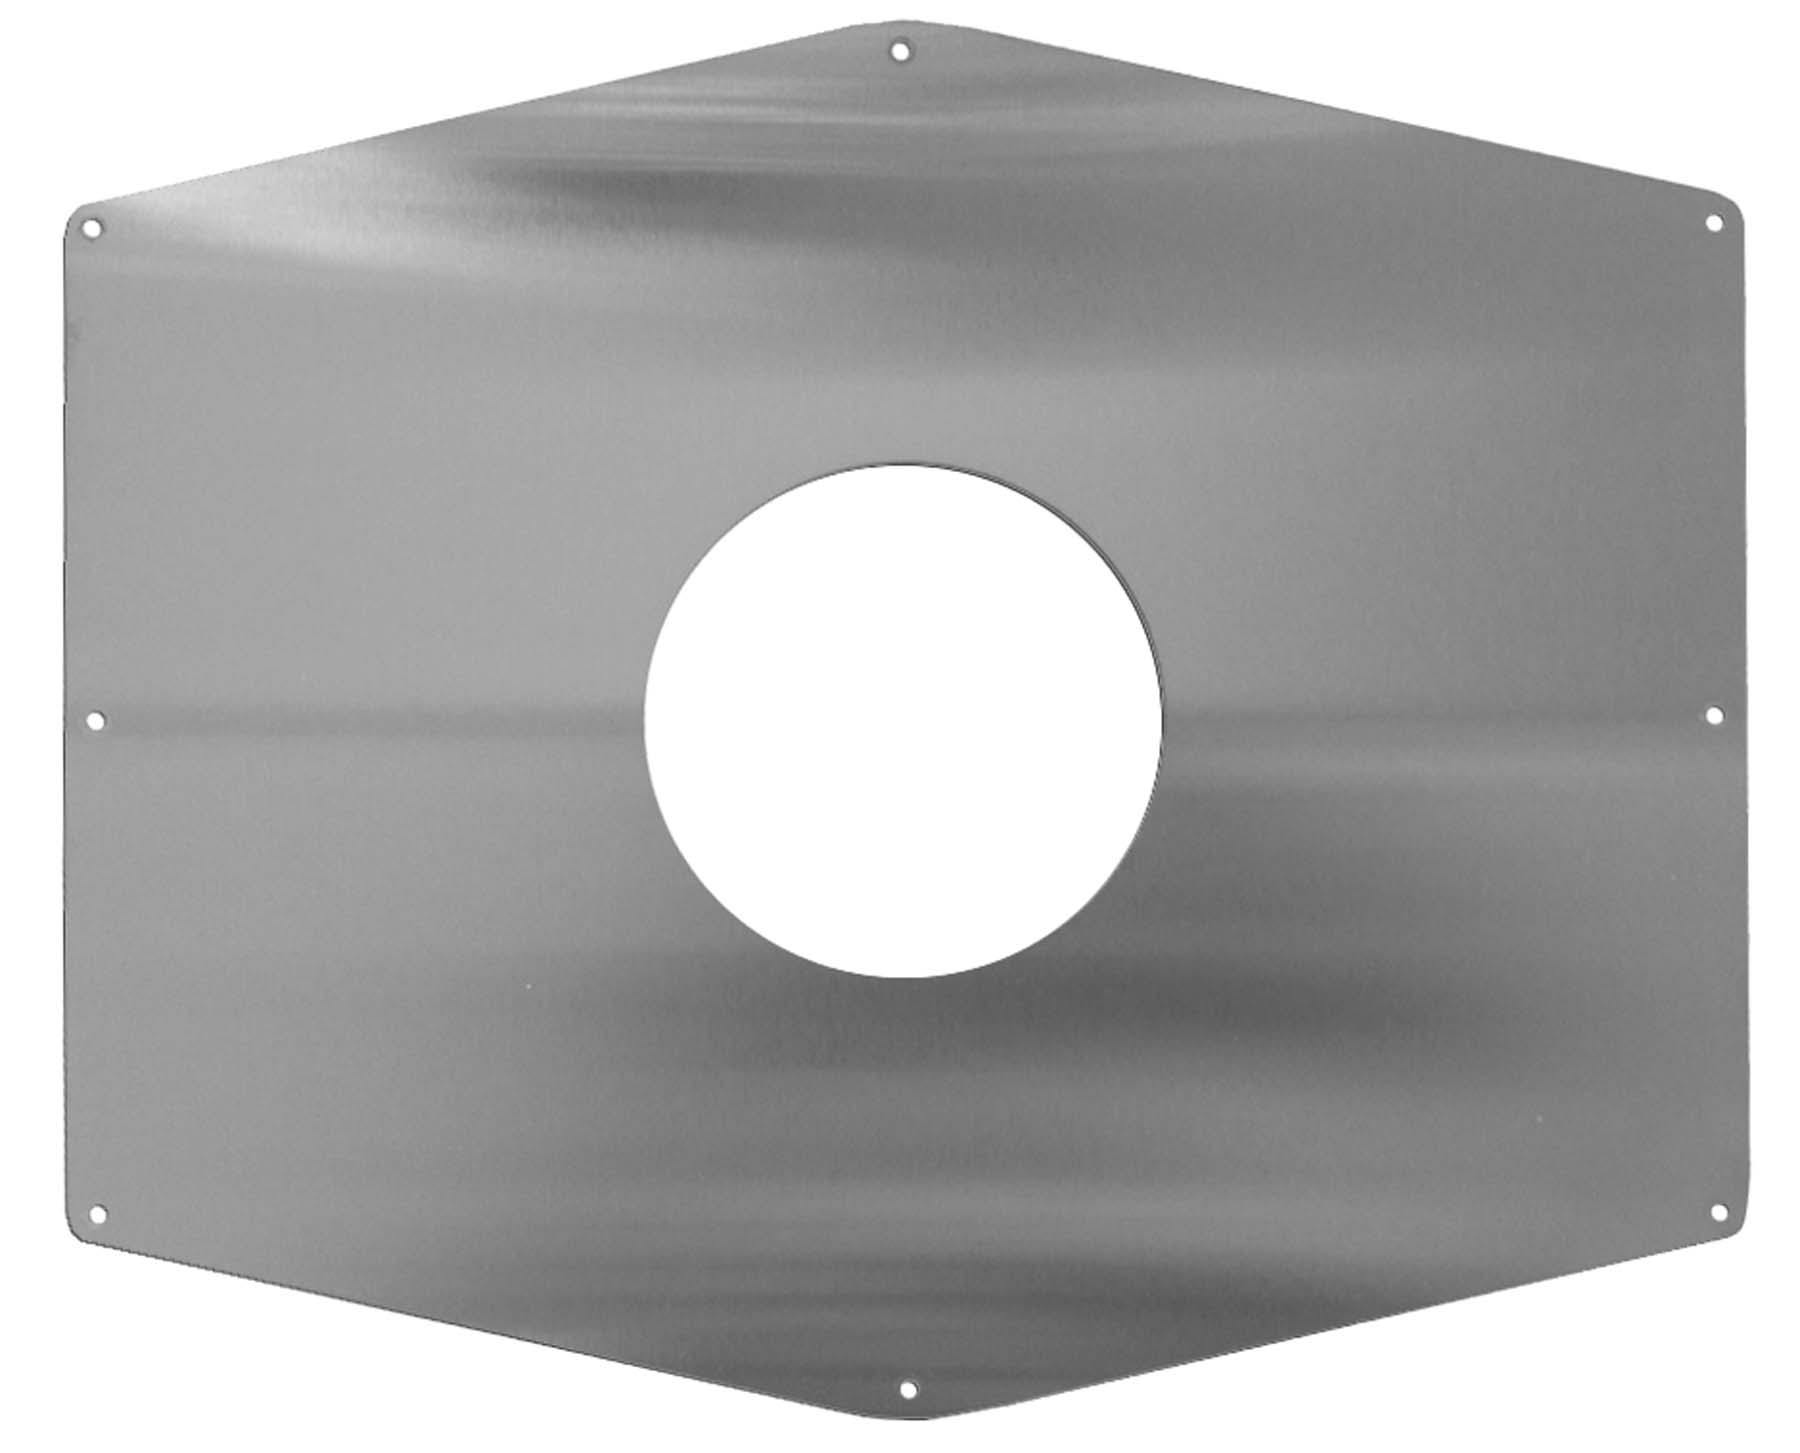 Remodeling cover plate for ligature resistant shower valve